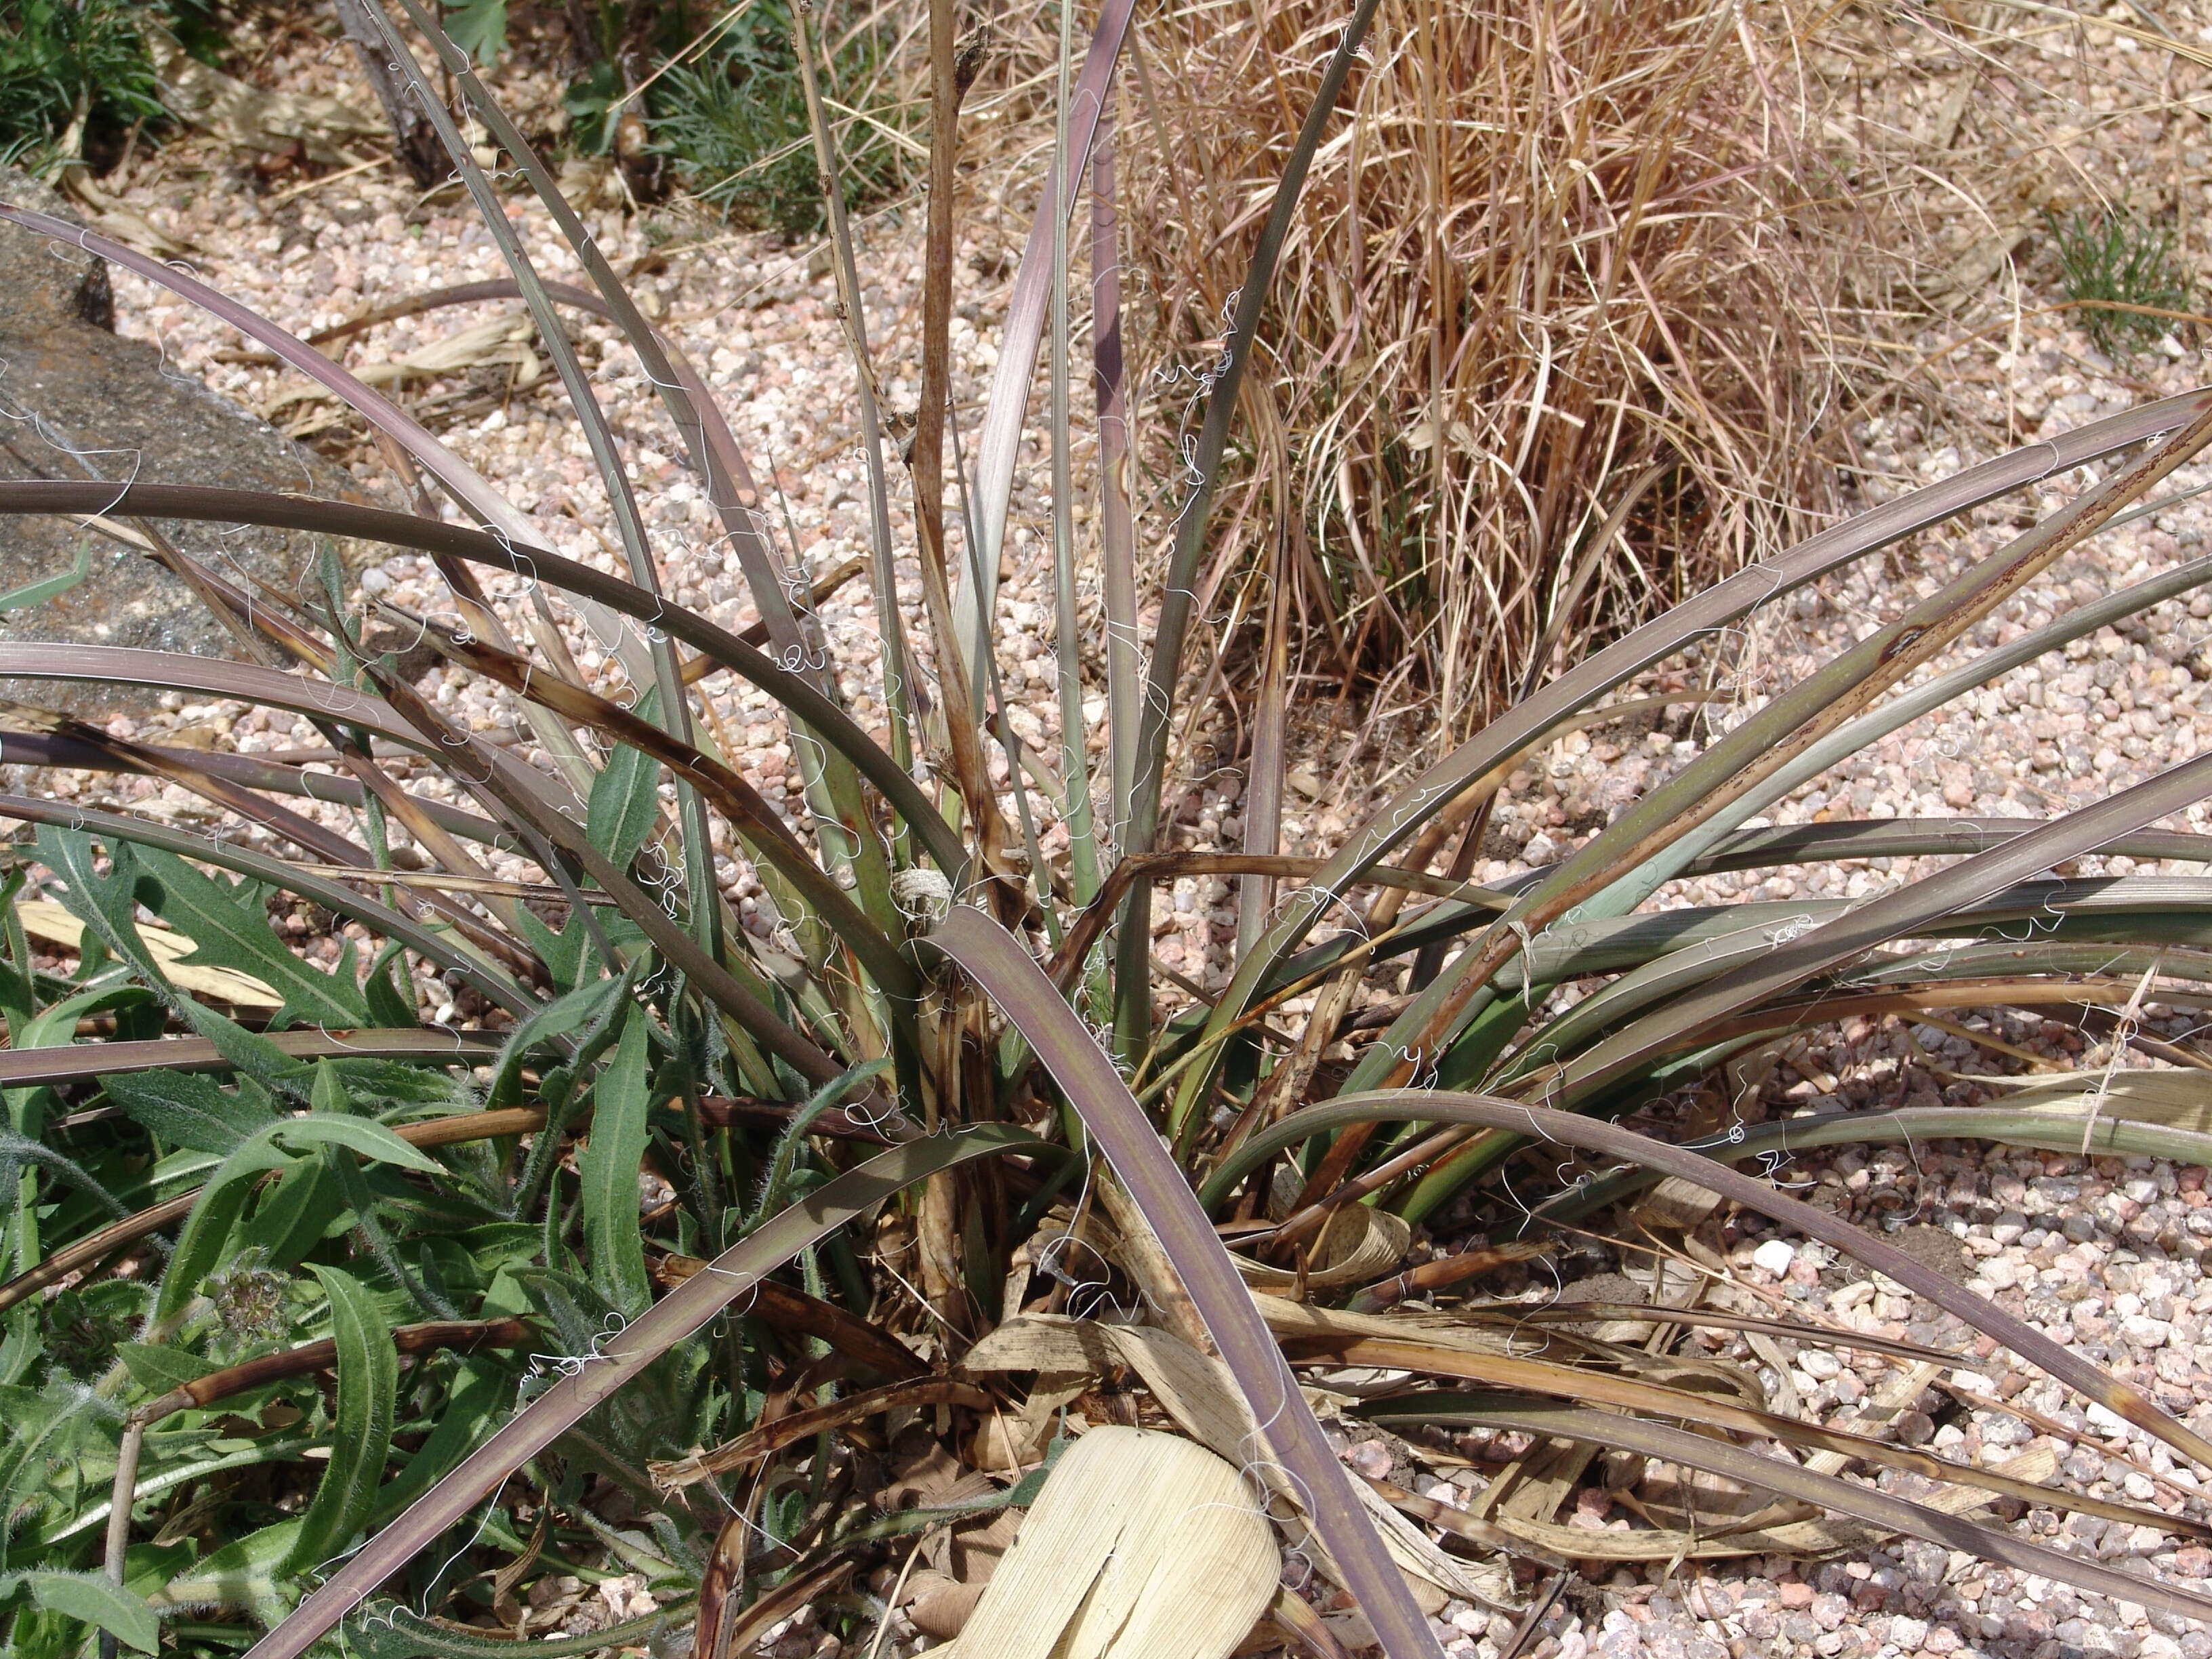 Image of false yucca